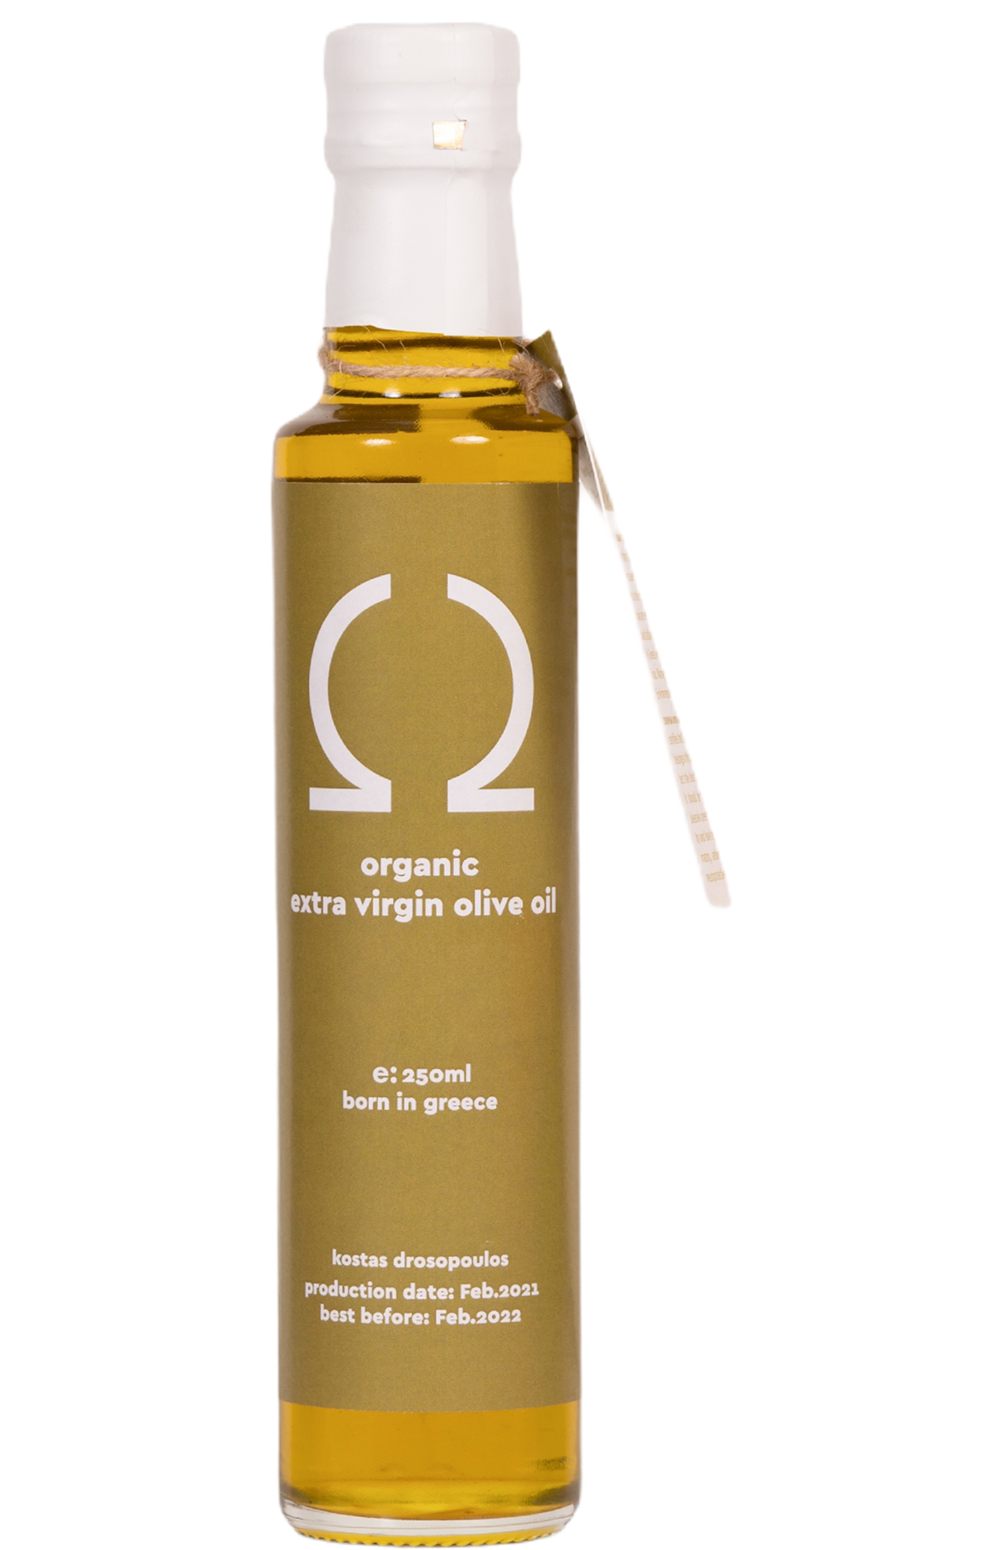 Ω organic extra virgin olive oil